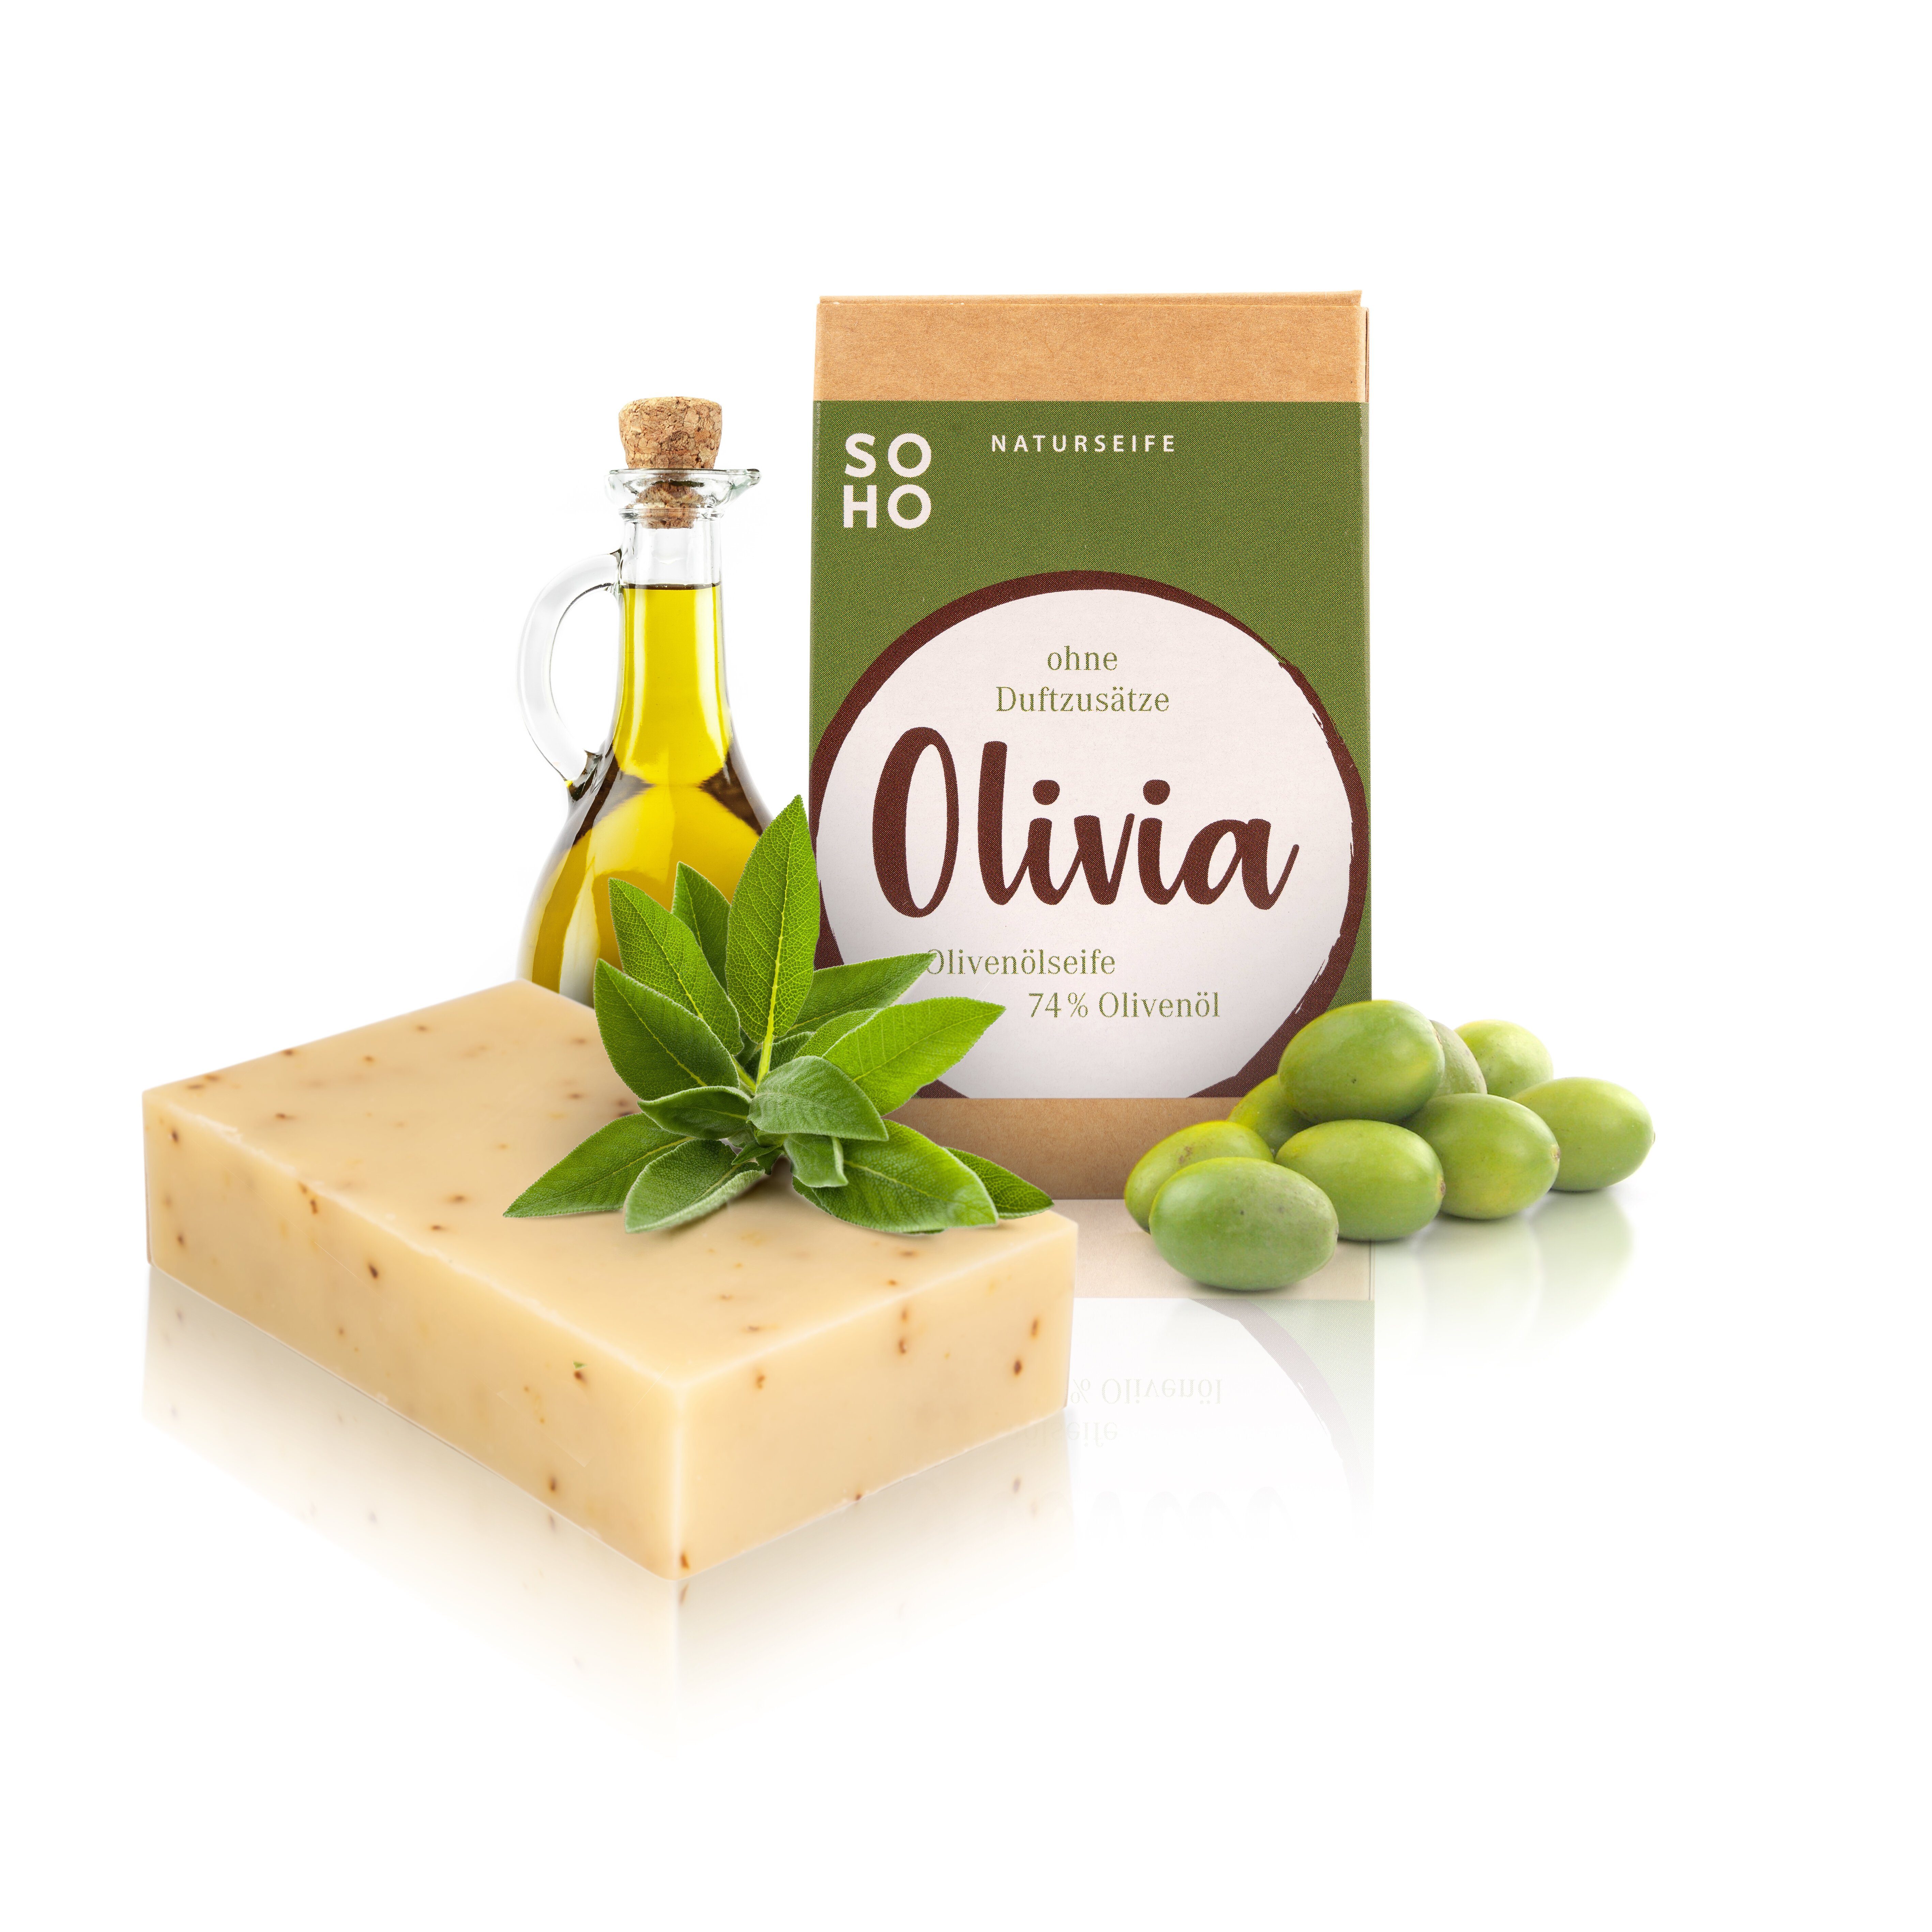 SOHO Naturkosmetik Gesichtsseife Peelingseife Olivia 74 Olivenöl allergenfrei, % mit